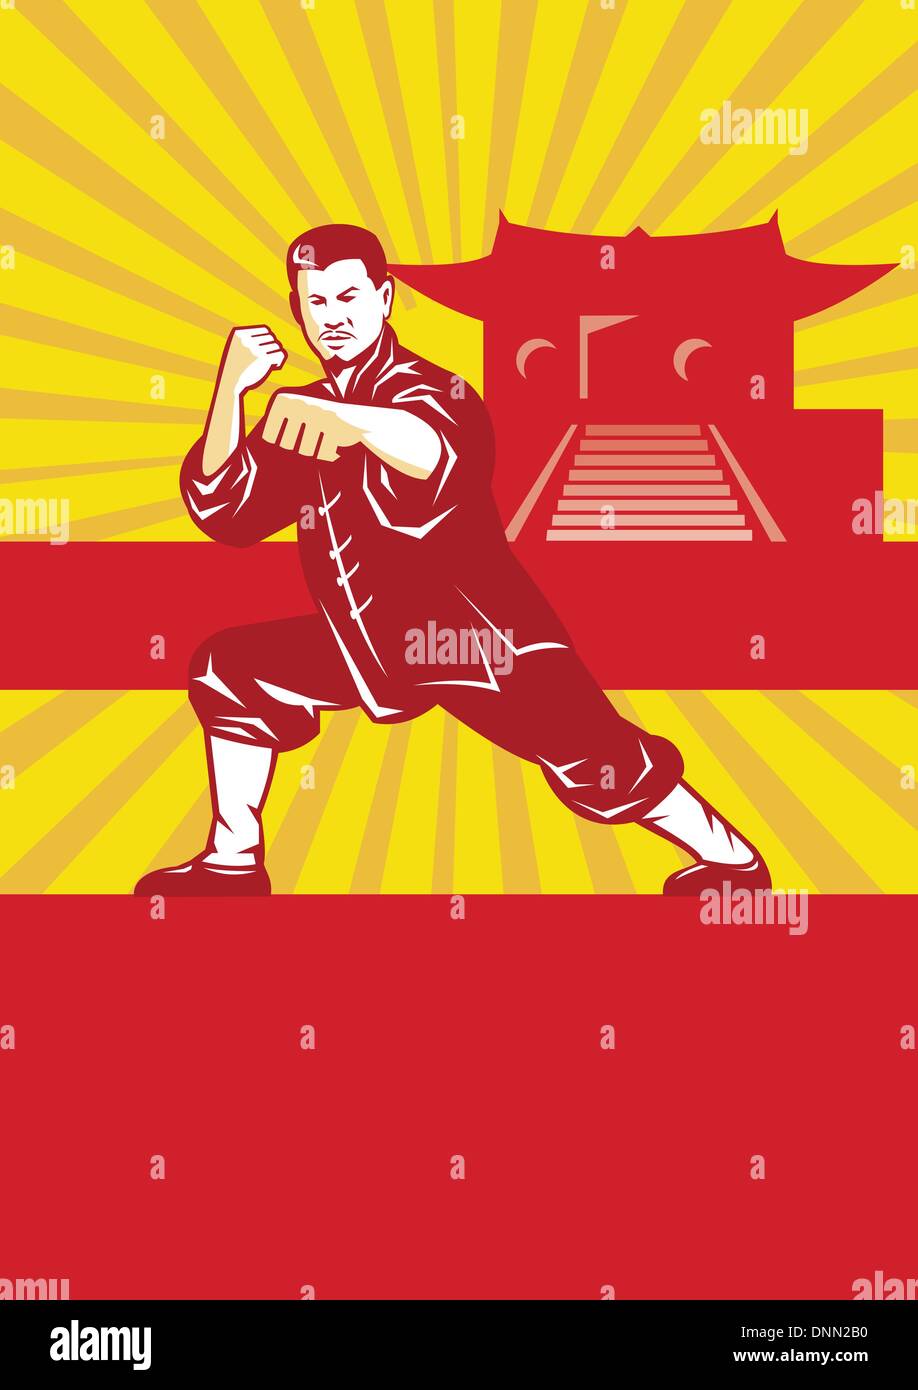 Illustration des Shaolin Kung Fu Kampfkunst Karate-Meister bei der Bekämpfung der Haltung mit Tempel und Sunburst im Hintergrund gesetzt innerhalb Stock Vektor